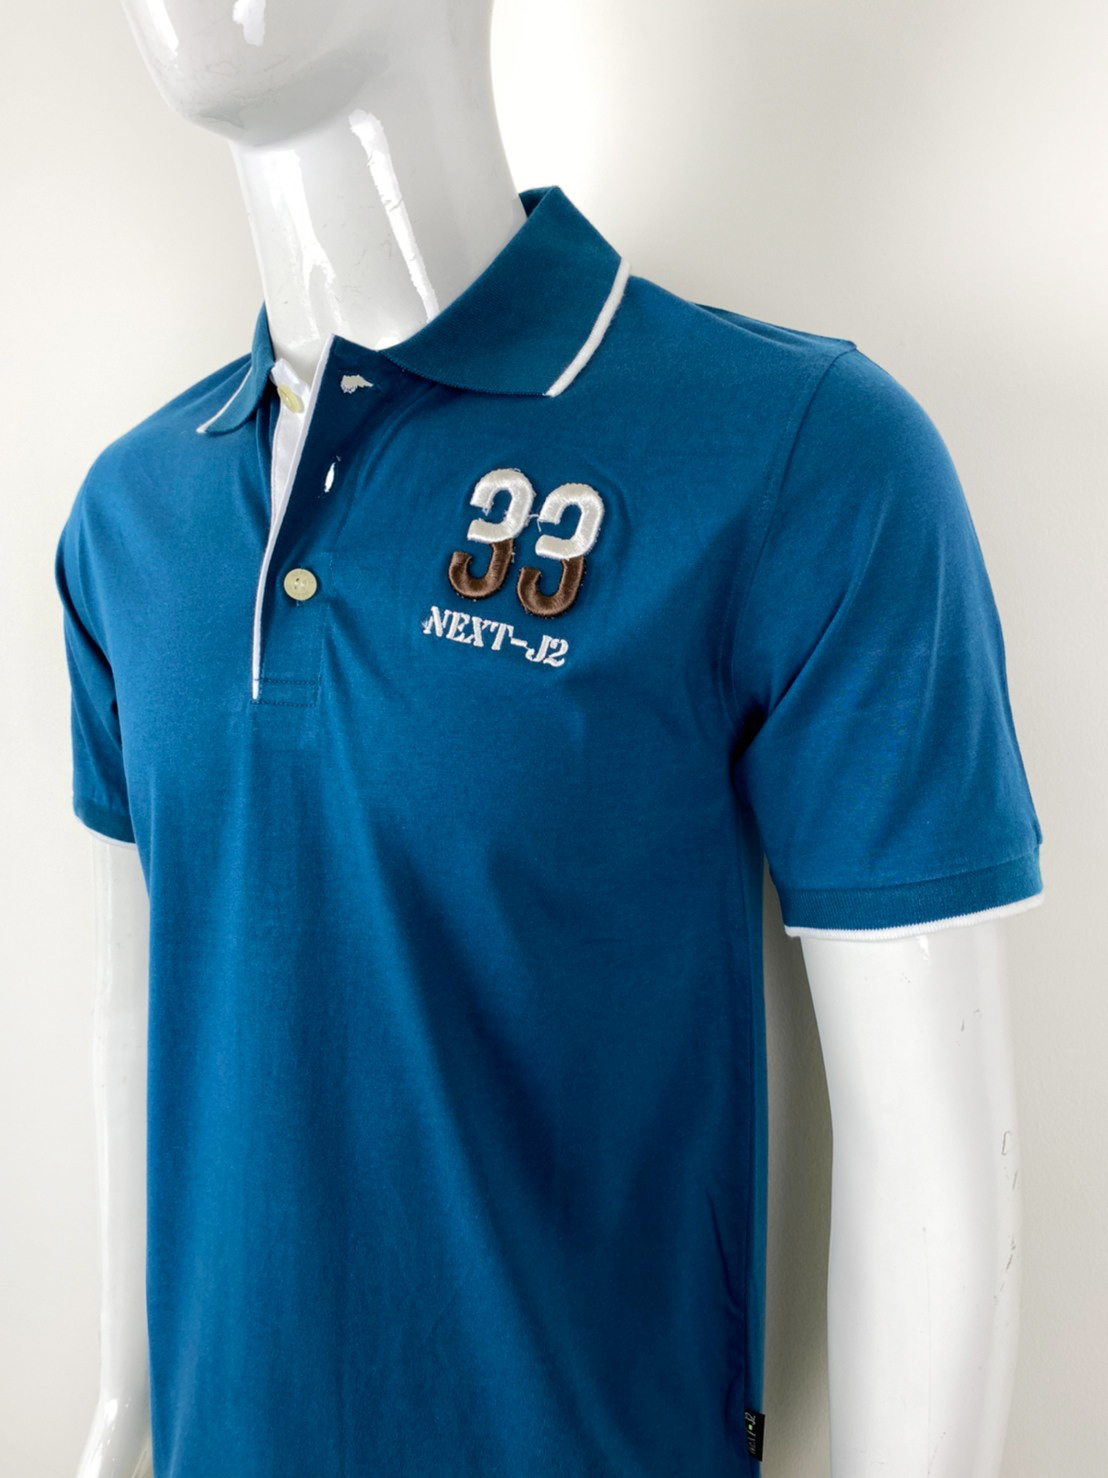 เสื้อโปโลชาย ยี่ห้อ Next-J2 ผ้าคอตตอน100 Men Polo Shirt cotton100% มีหลายสีให้เลือก M-รอบอก38นิ้ว , L-รอบอก42นิ้ว ,Xl-รอบอก46 นิ้ว